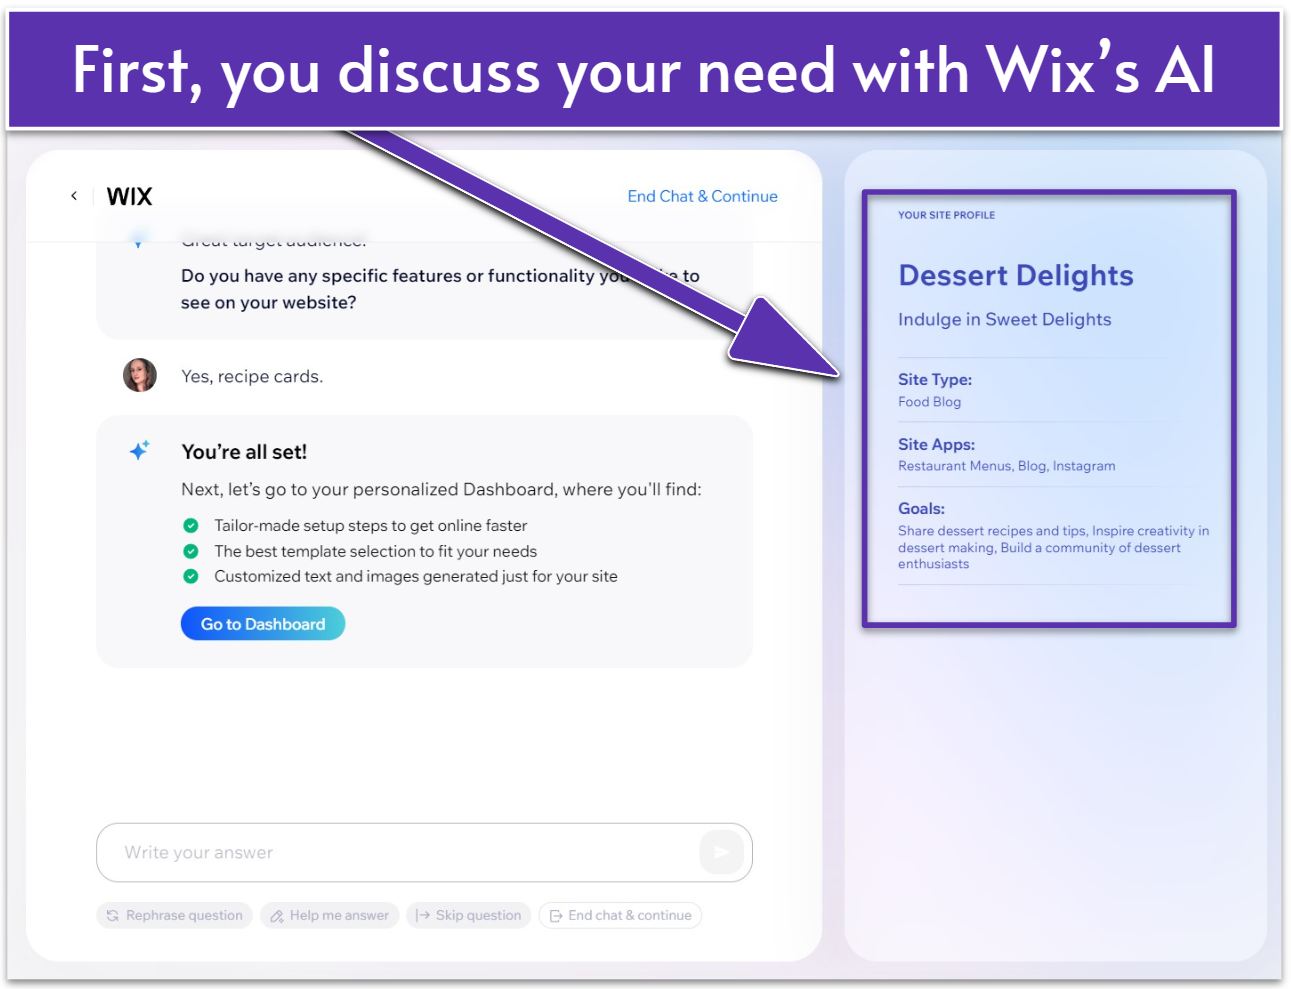 Wix's AI website generation chatbot questionnaire